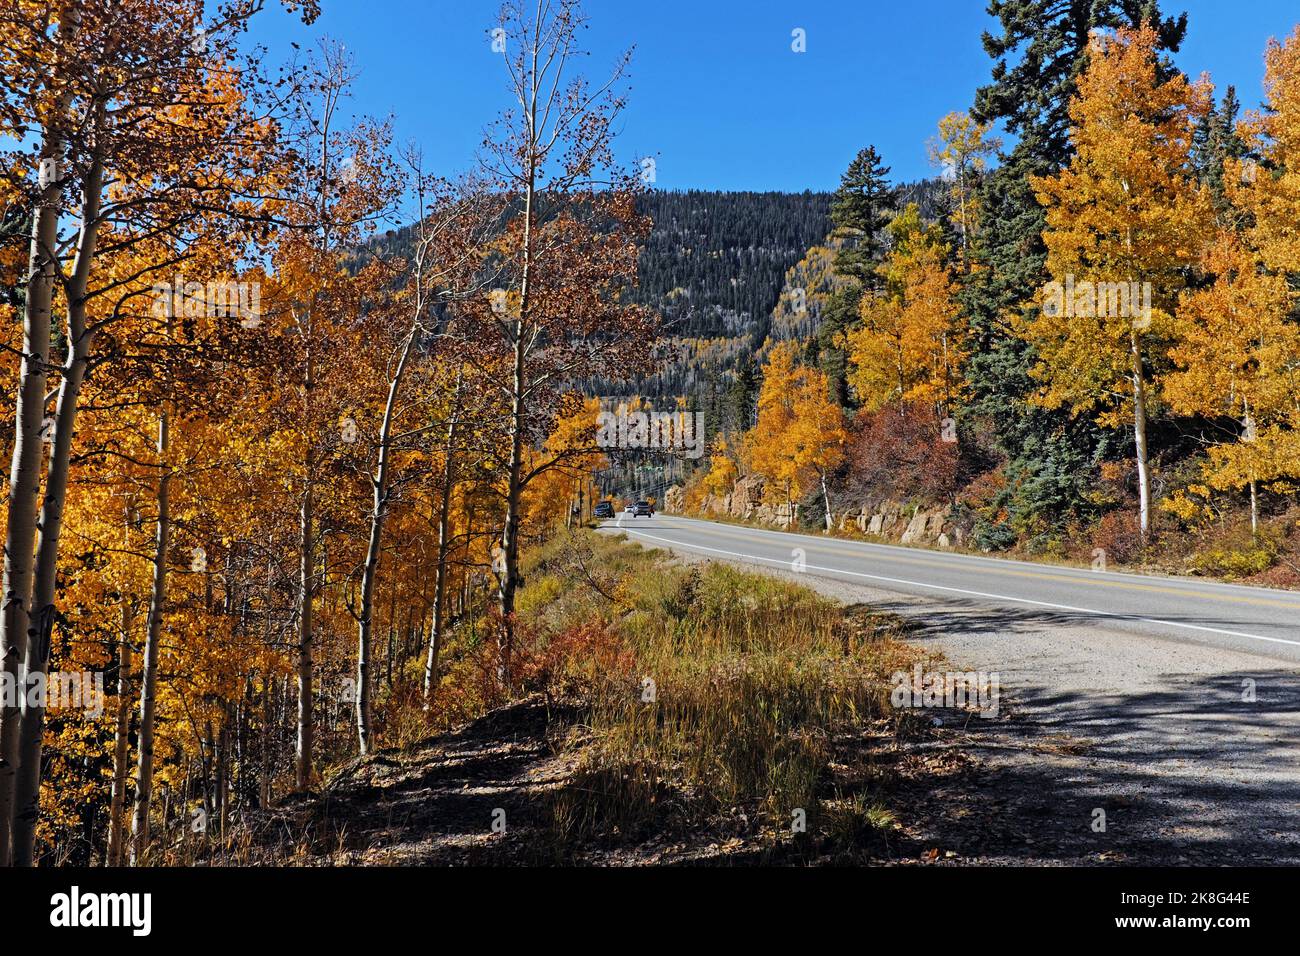 L'US route 550, qui regarde vers le sud, est une route colorée pendant l'automne car elle s'enroulent autour du paysage montagneux entre Durango et Silverton, Colorado. Banque D'Images